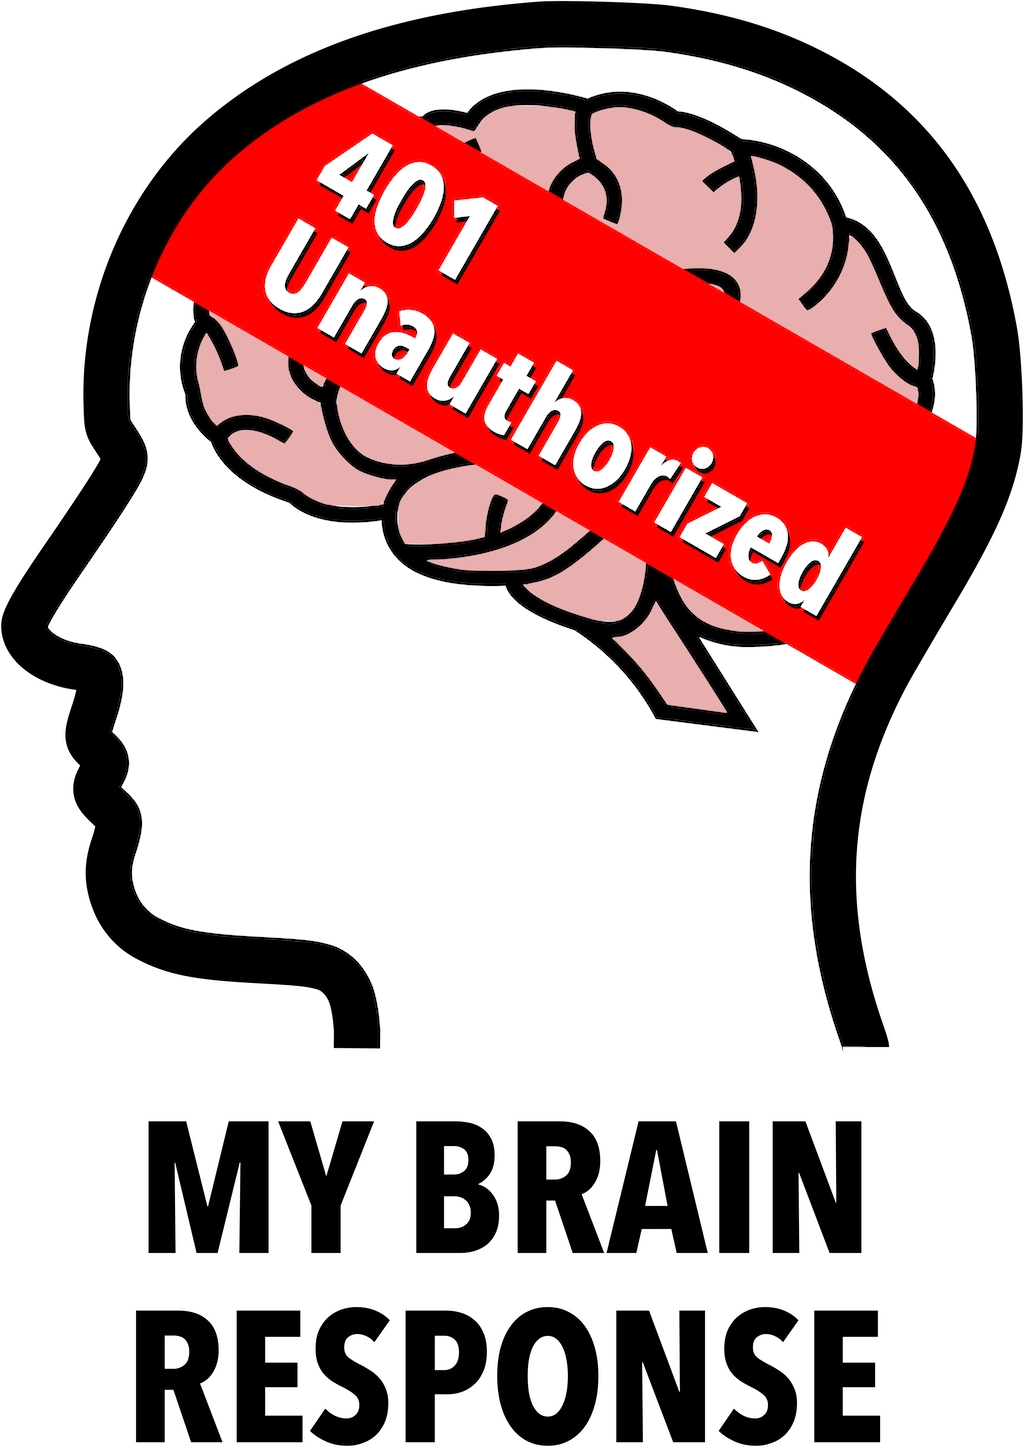 My Brain Response: 401 Unauthorized